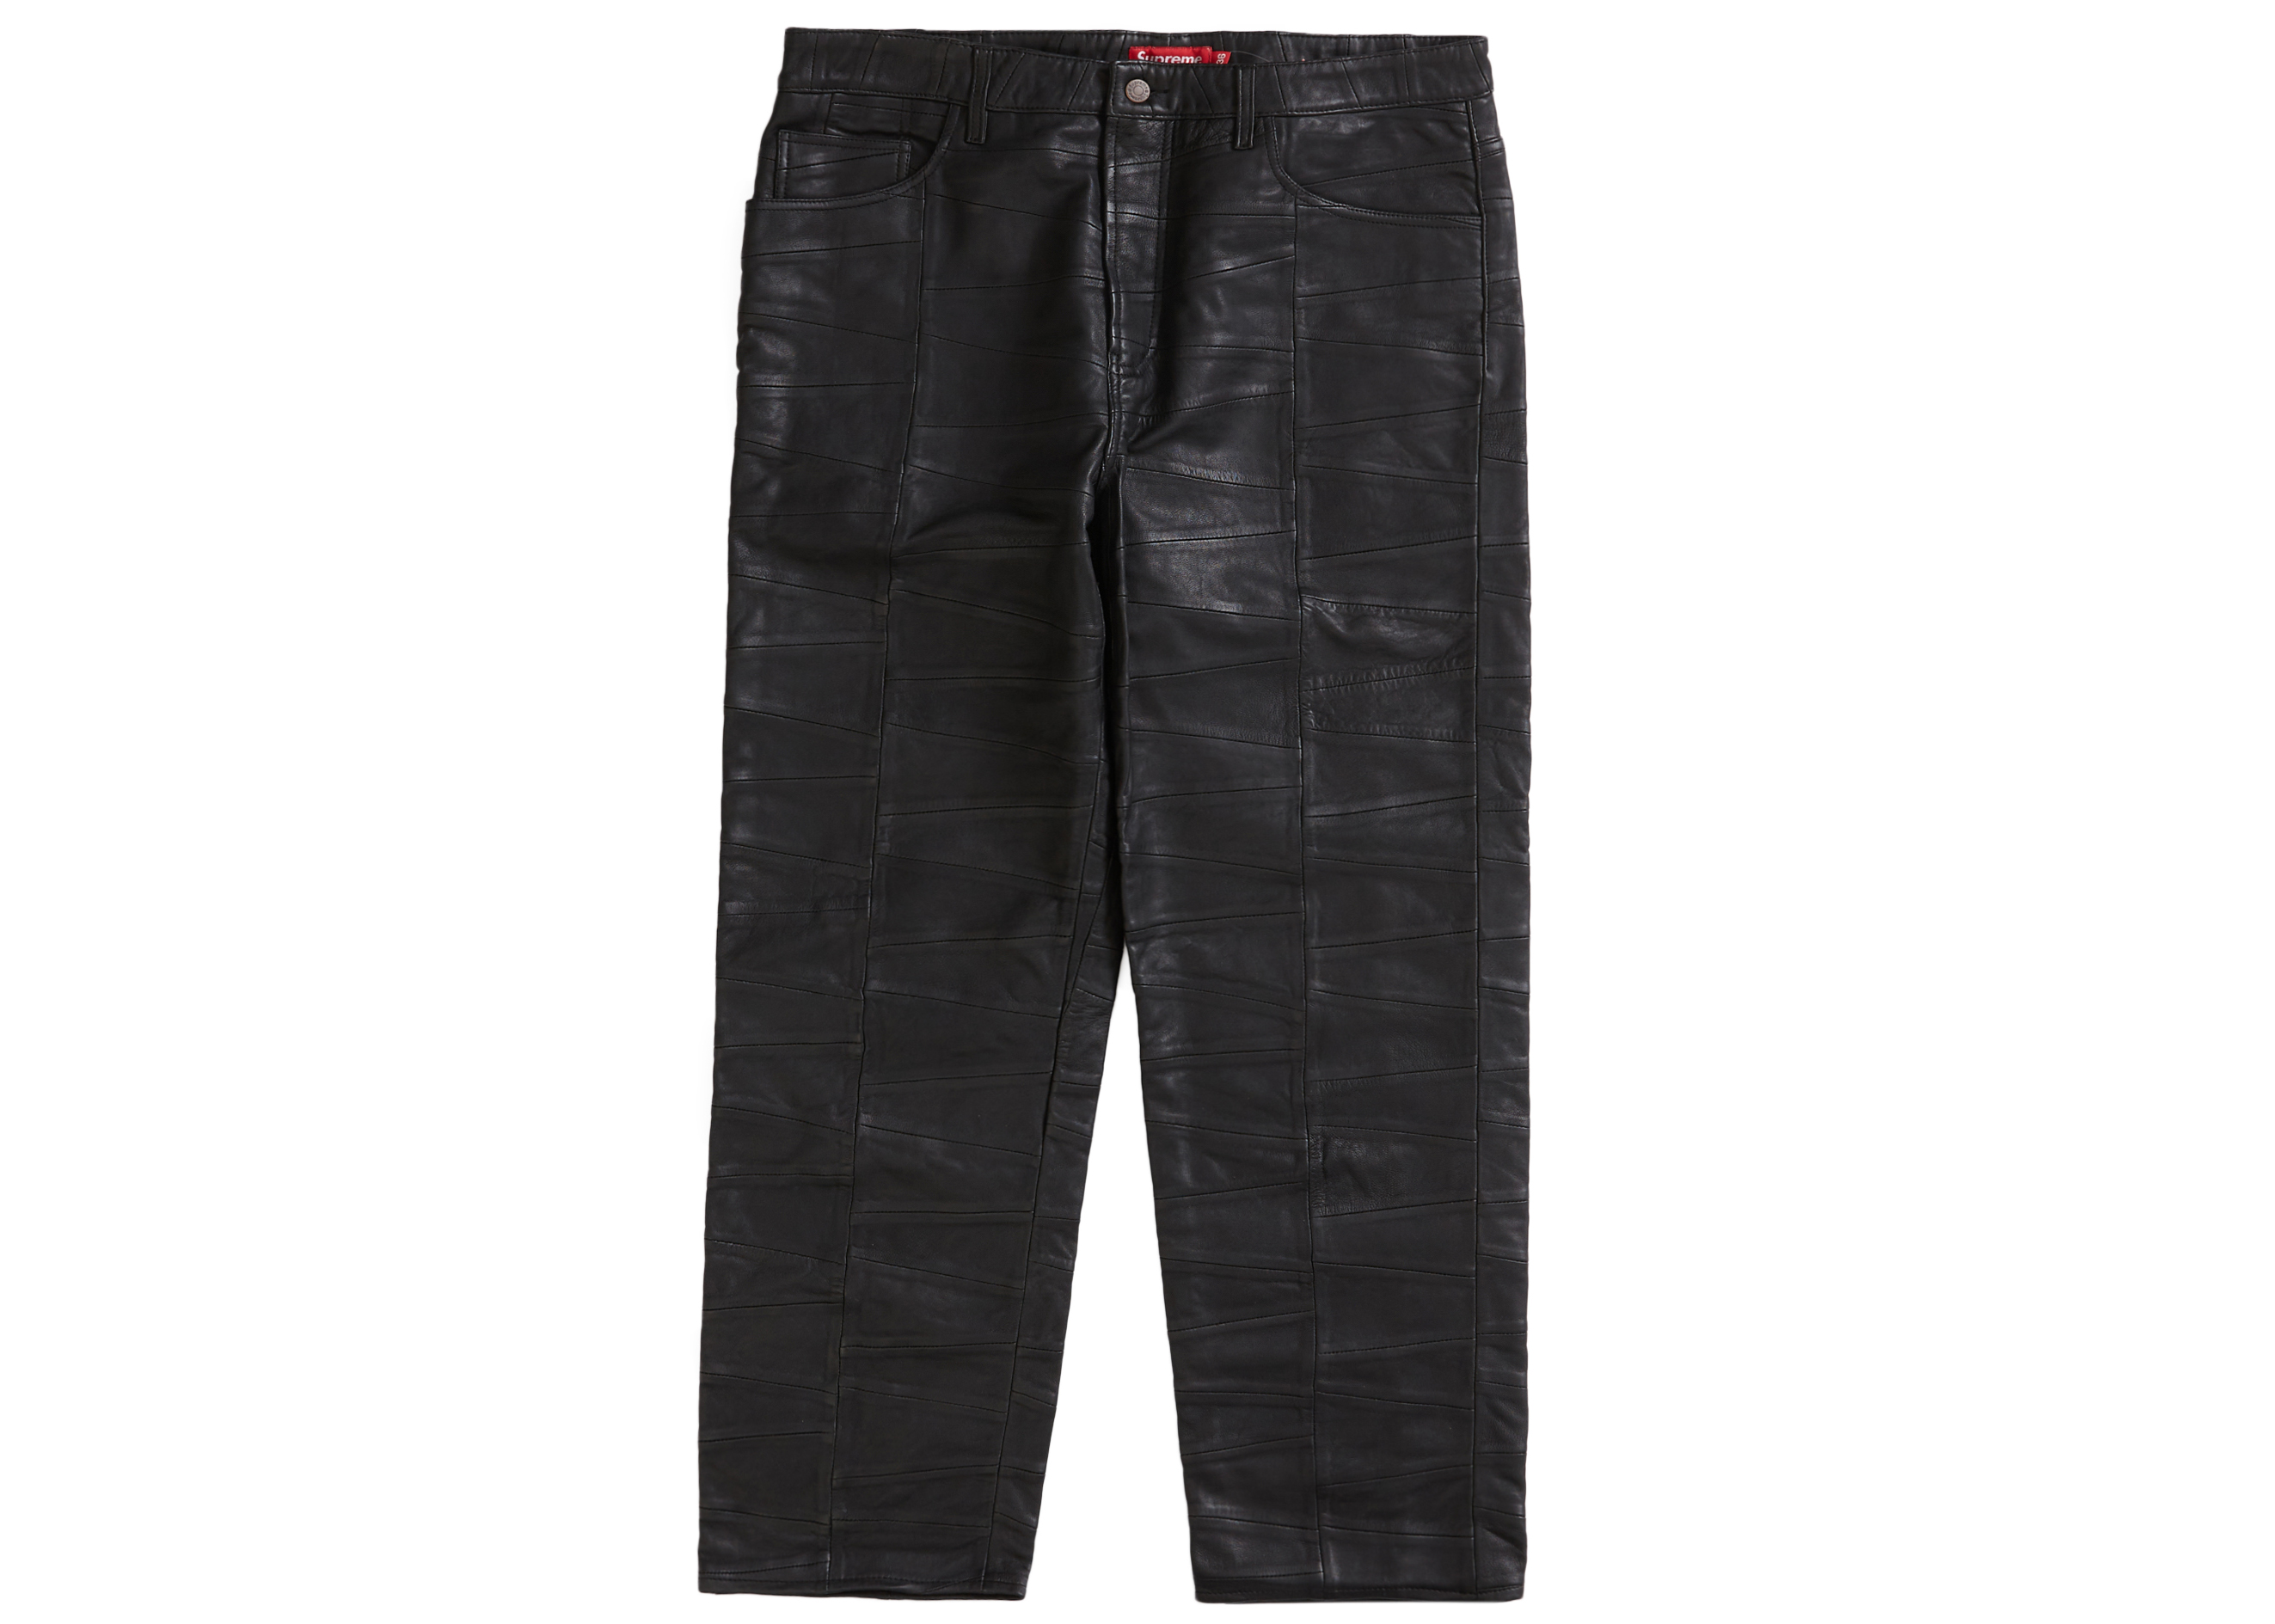 Supreme Patchwork Leather 5-Pocket Jean Black